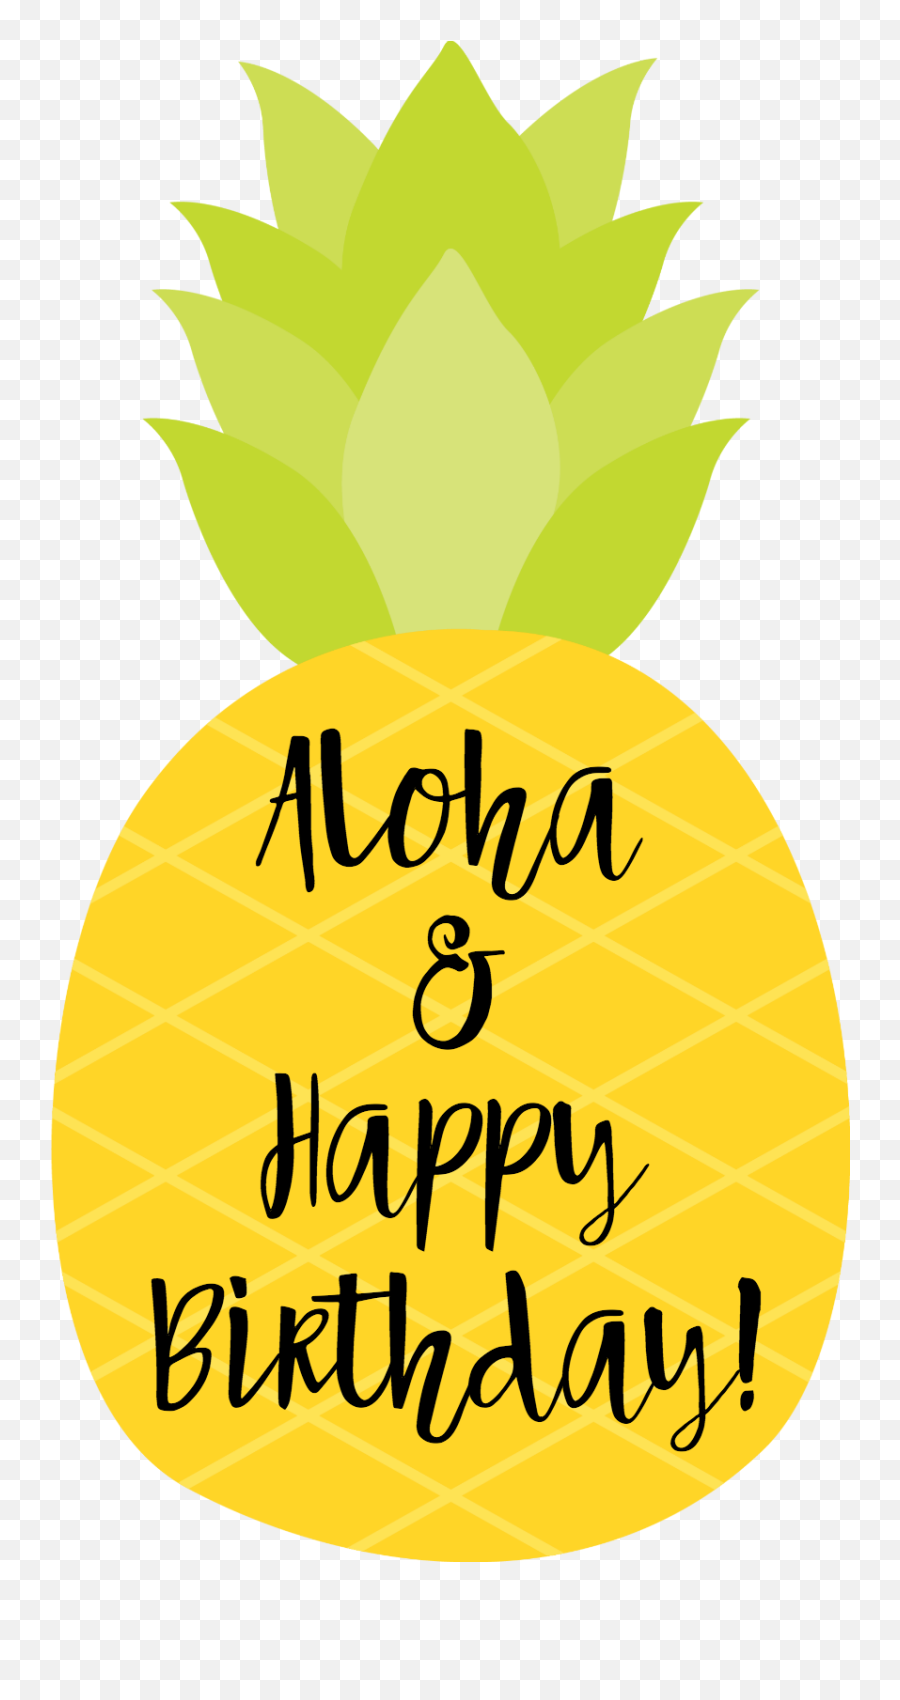 120 Hawaiian Birthday Greetings Ideas In 2021 Birthday Emoji,30th Birthday Clipart